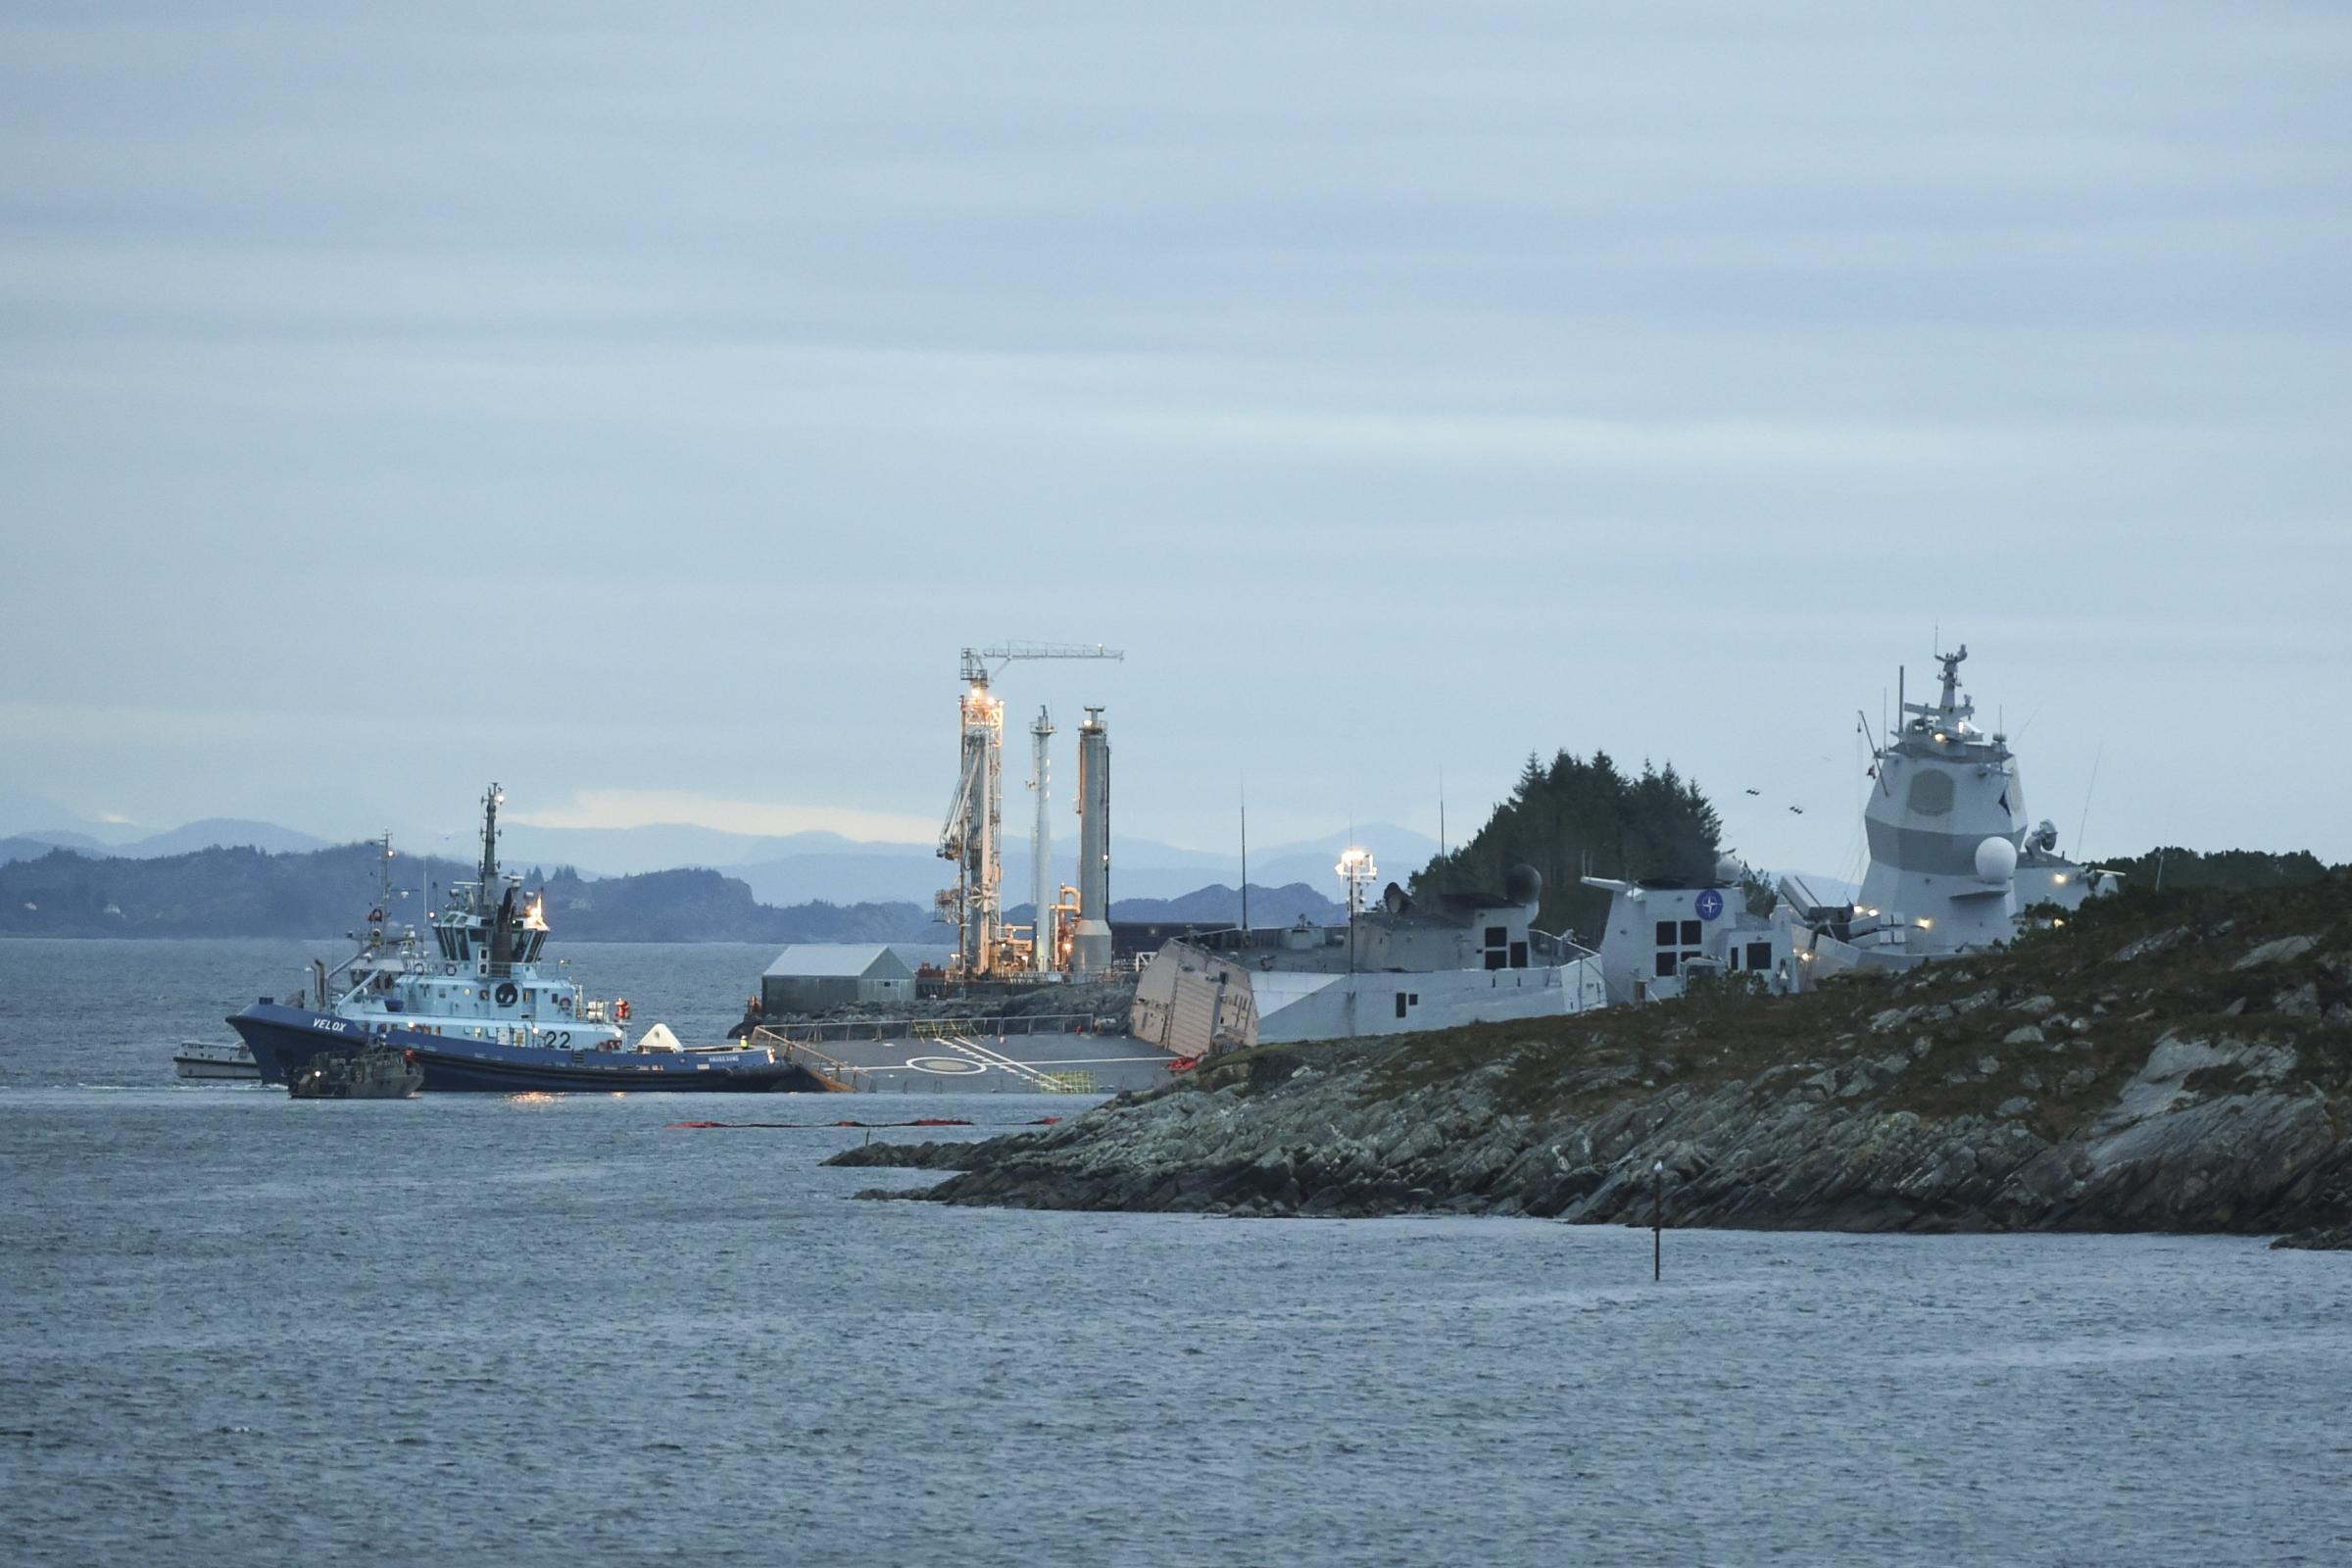 تعطيلي تاسیسات نفتی نروژ در پی برخورد یک نفتکش با یک ناوچه